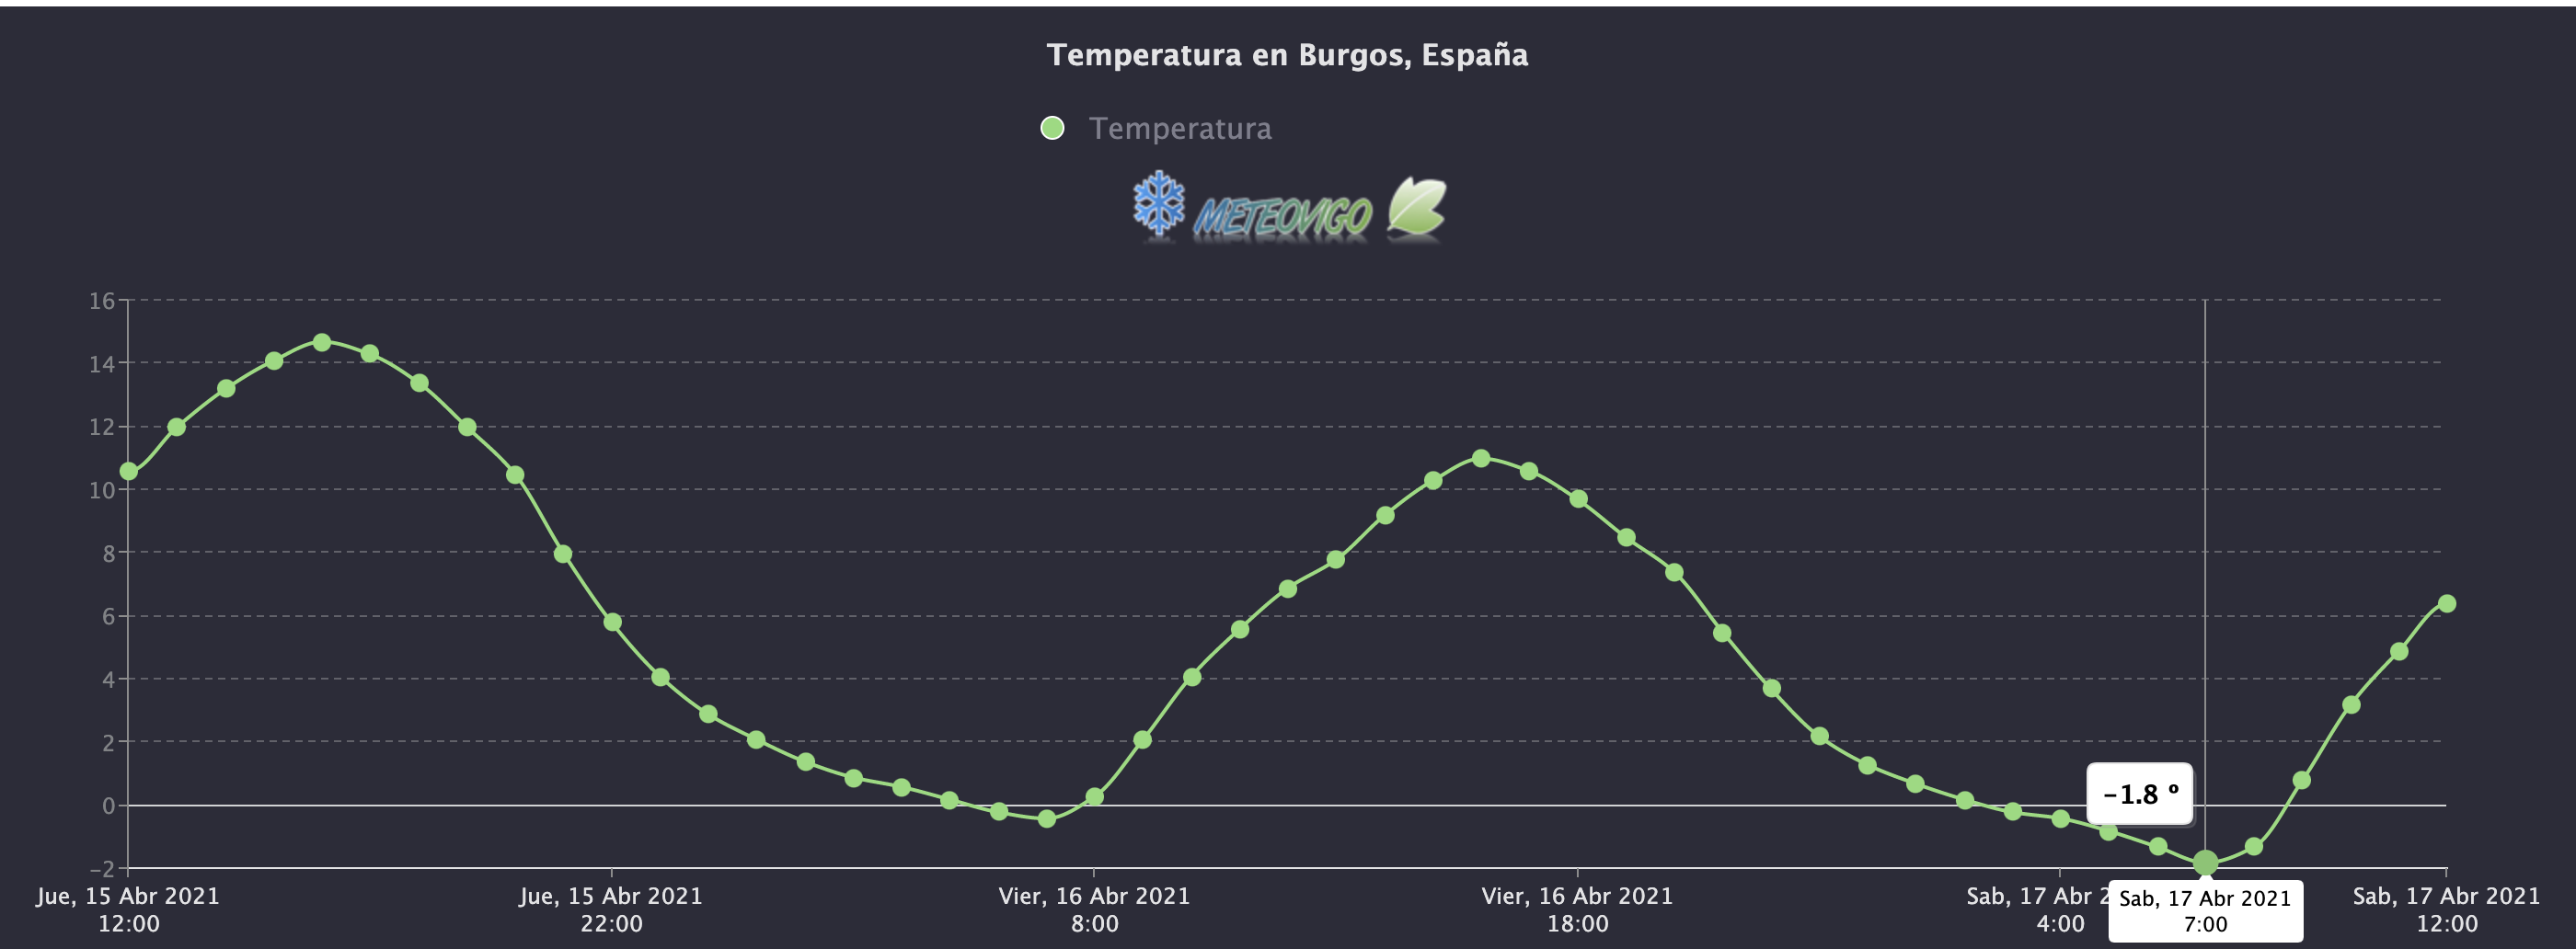 Temperaturas en Burgos